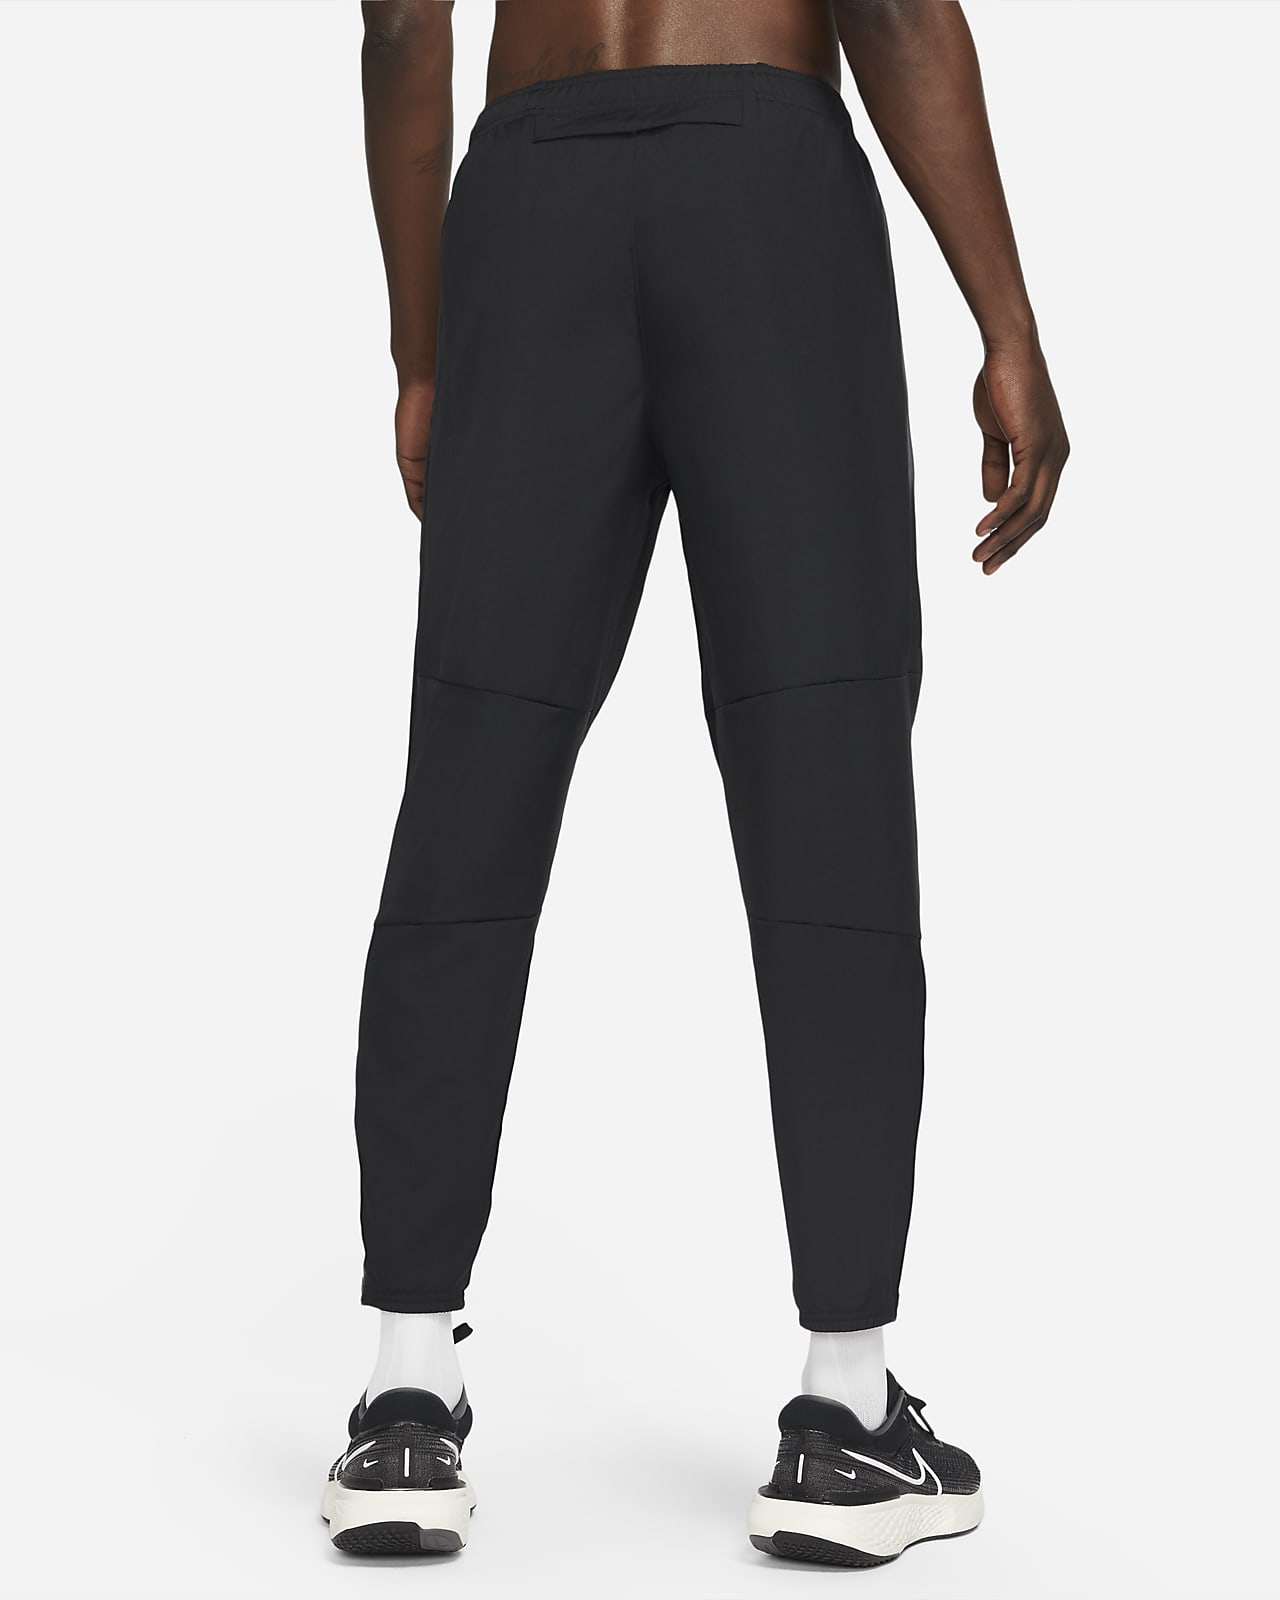 Buy Nike Running pants online